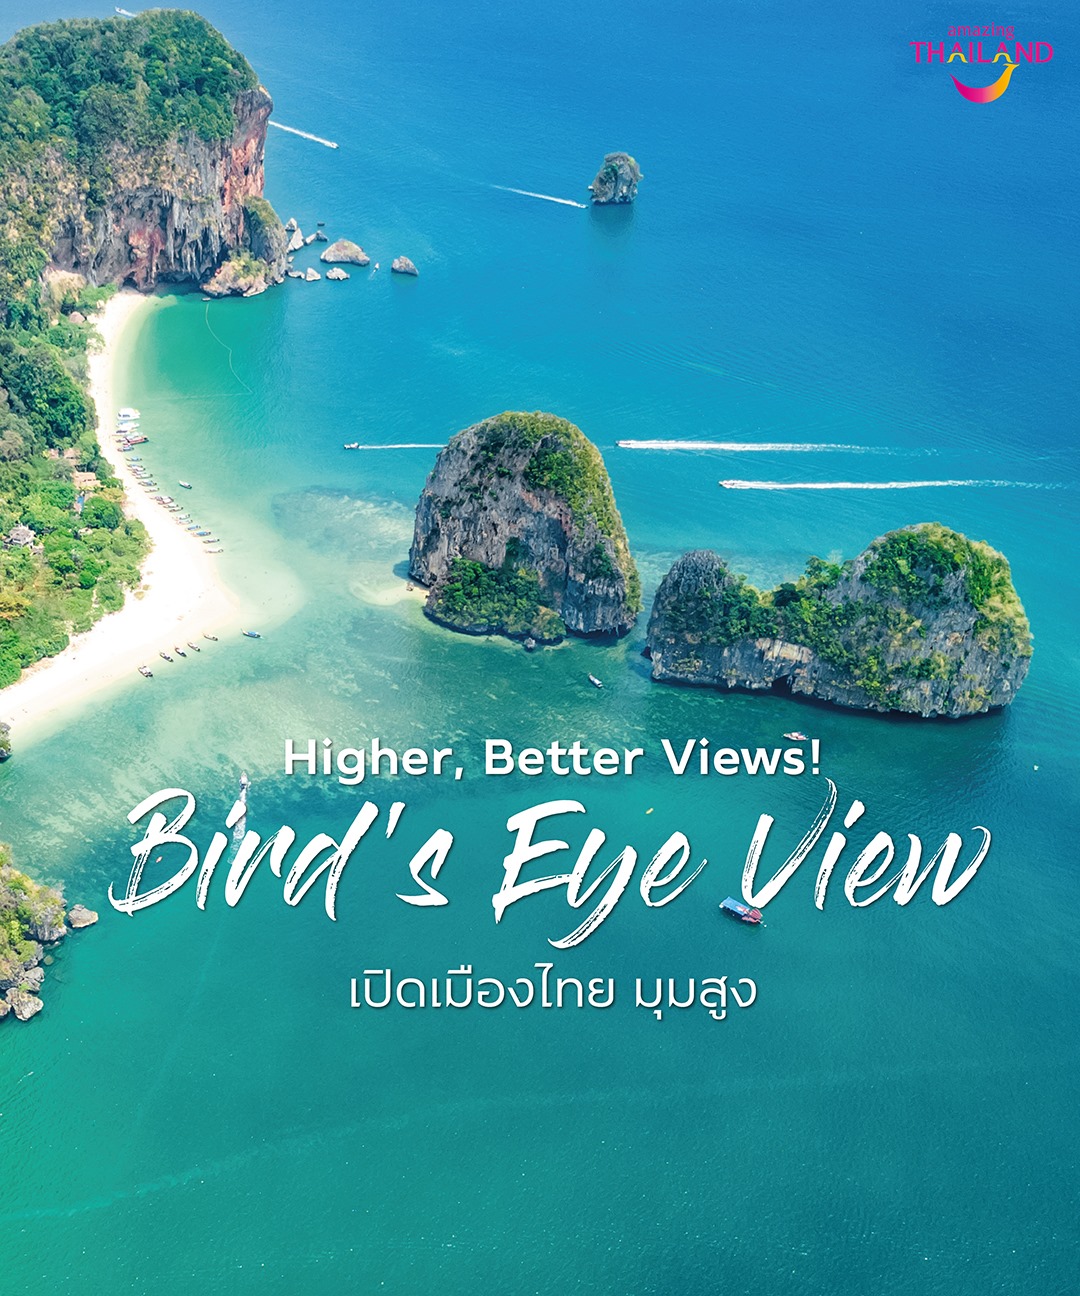 Higher, Better Views! Bird's Eye View